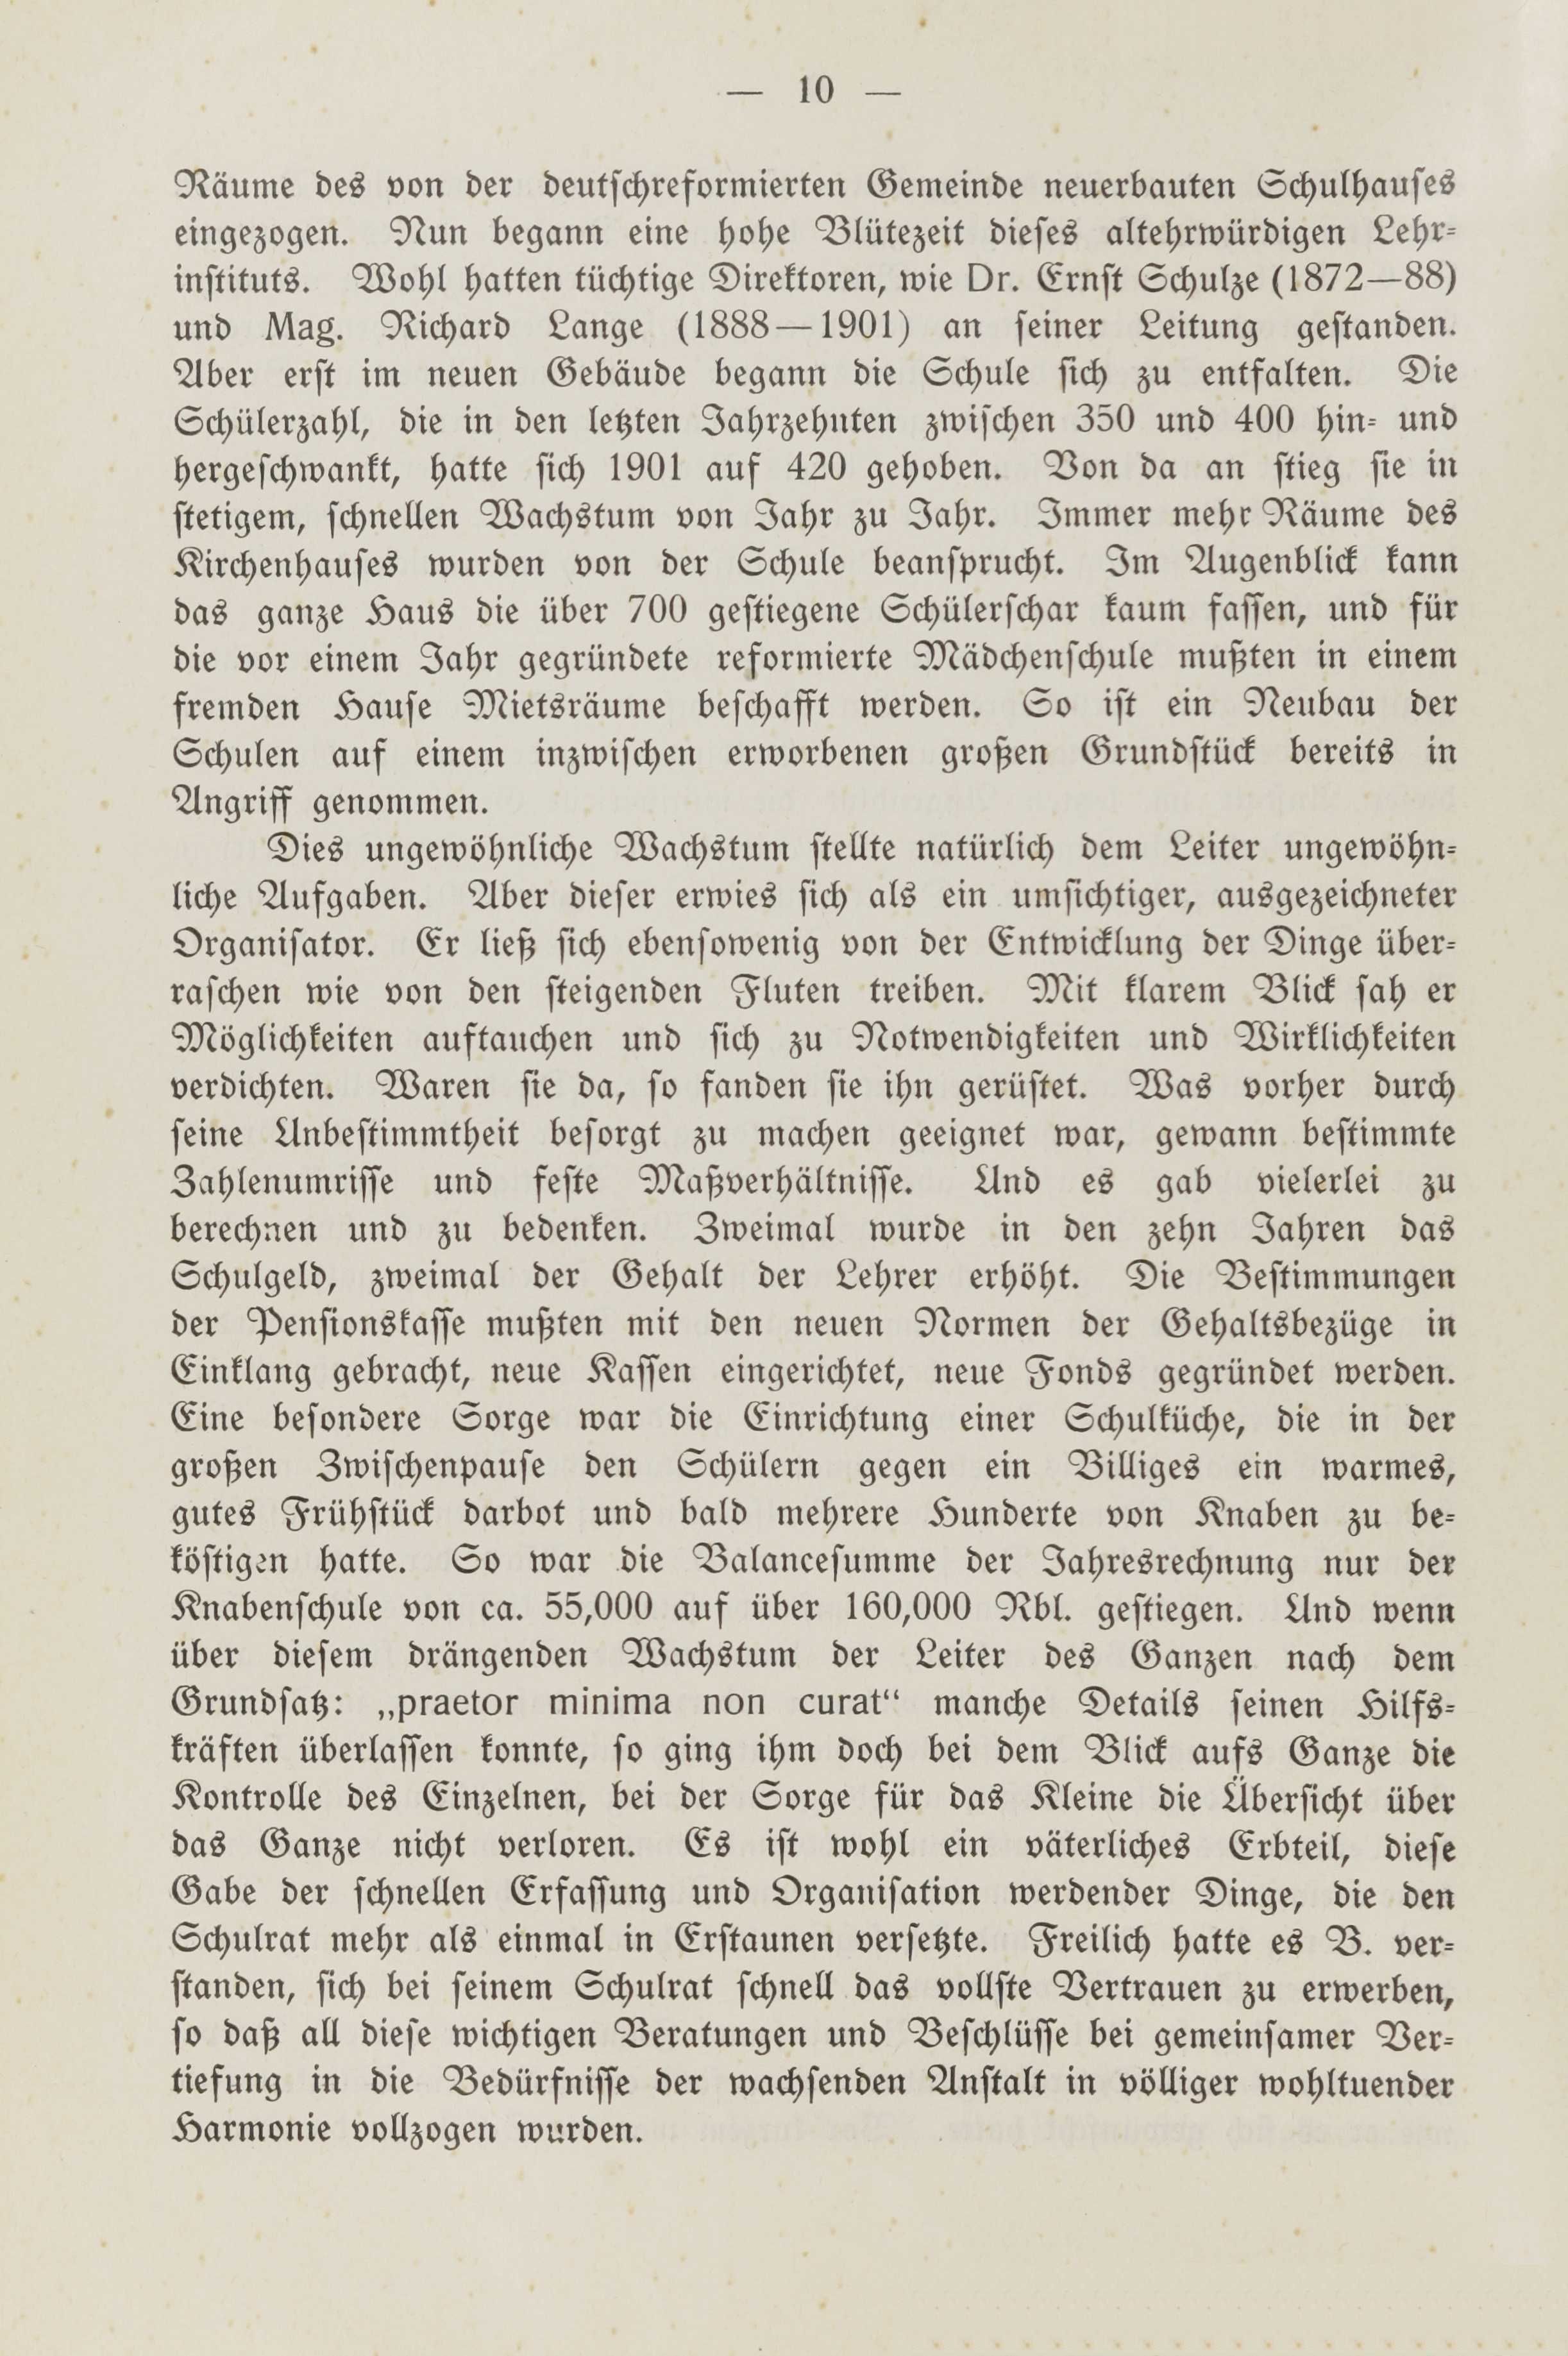 Deutsche Monatsschrift für Russland [2] (1913) | 14. (10) Main body of text